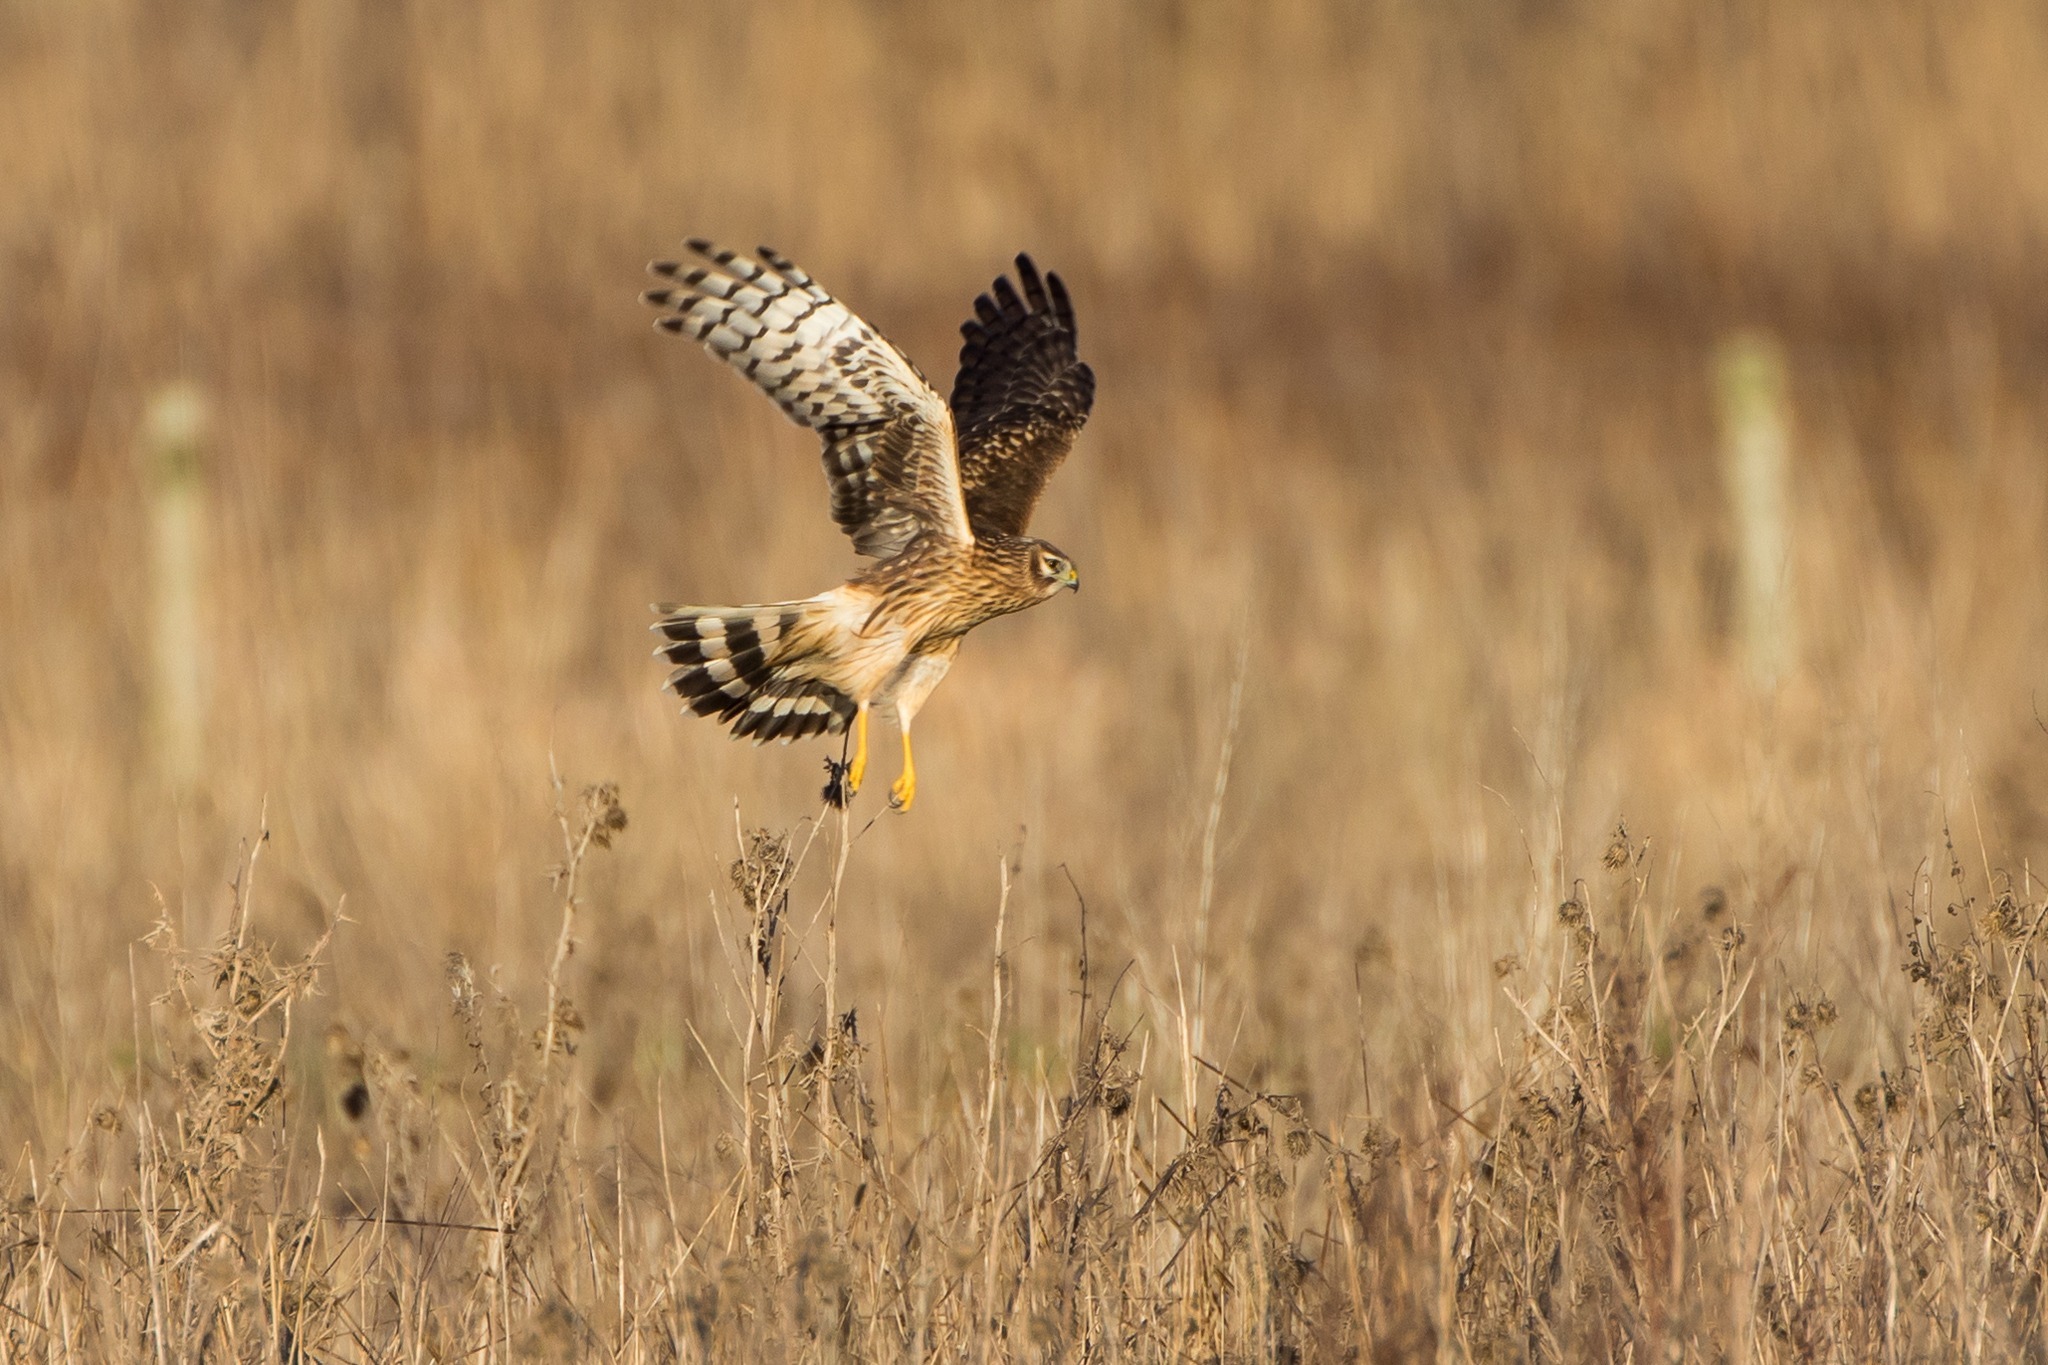 A Hen Harrier in Flight by Paul Wilson